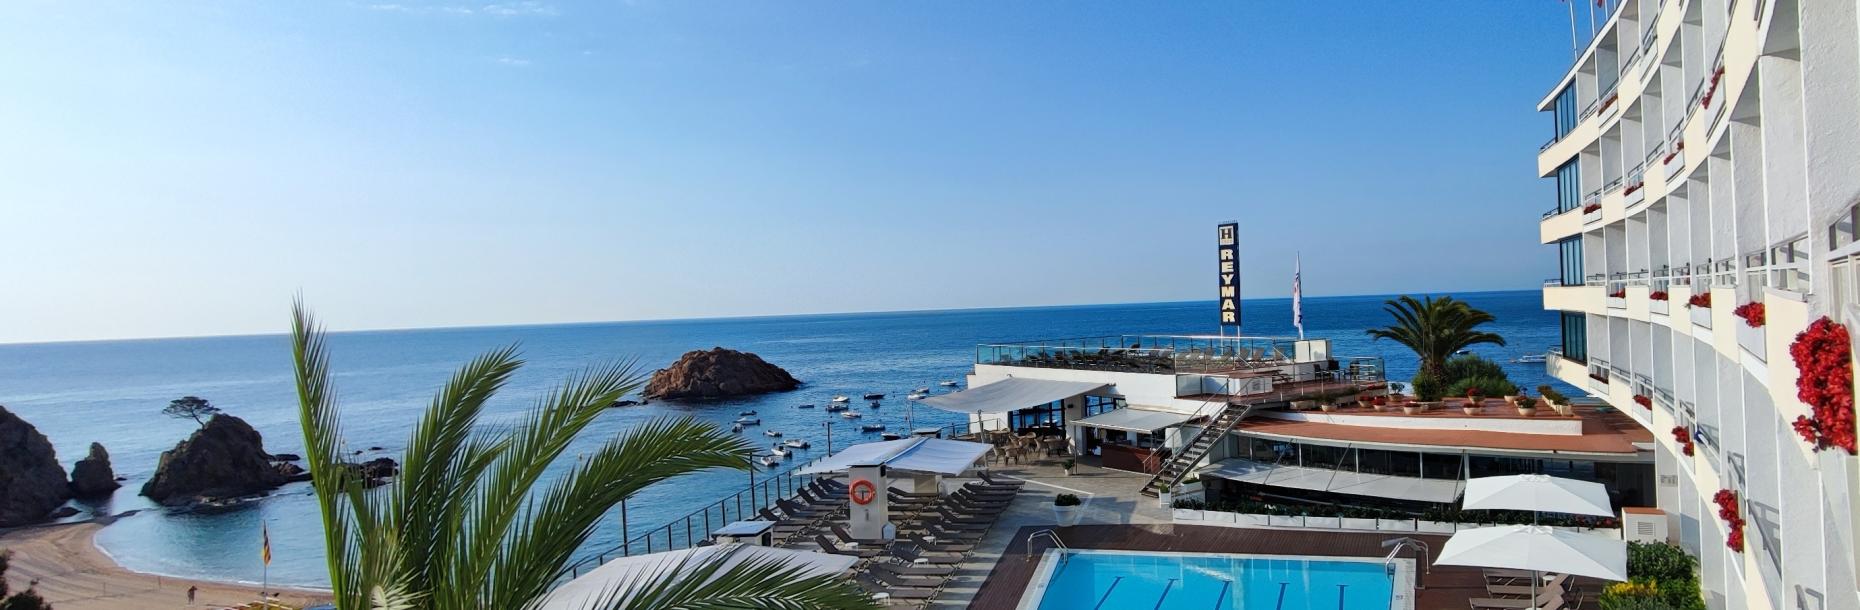 GRAN HOTEL REYMAR****s: Ihr Hotel mit Charme in Tossa de Mar (Costa Brava)